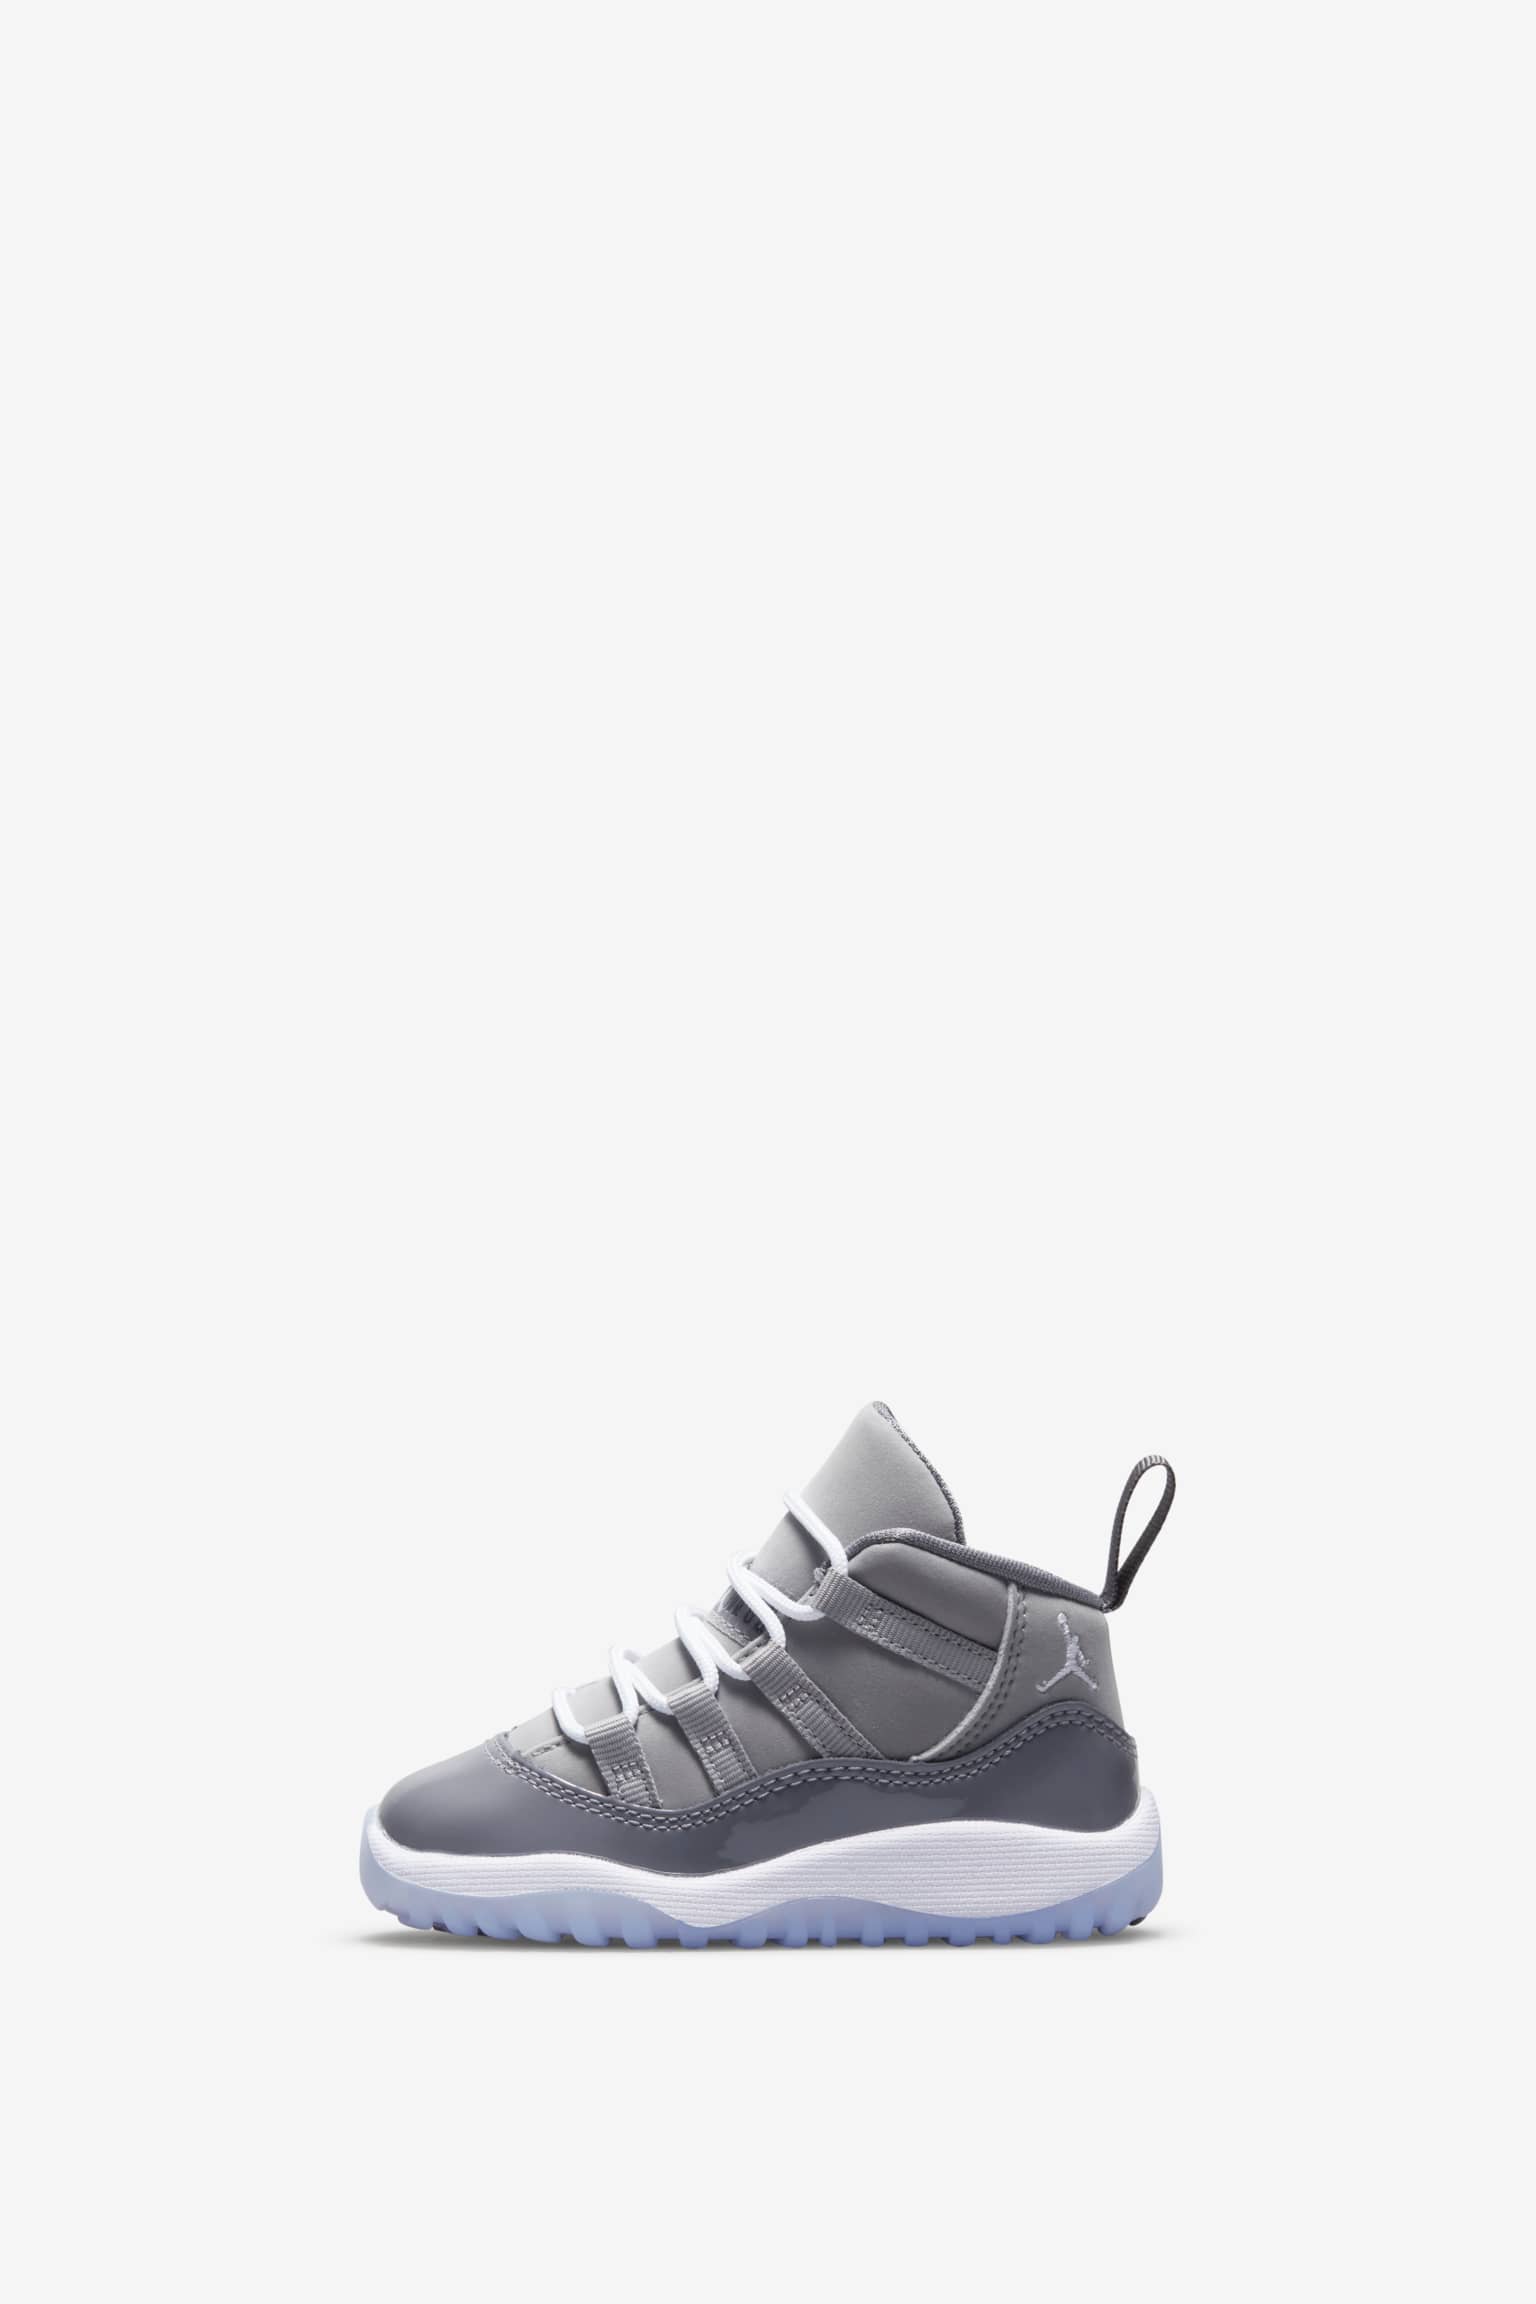 28.0cm Nike Air Jordan 11 Cool Grey